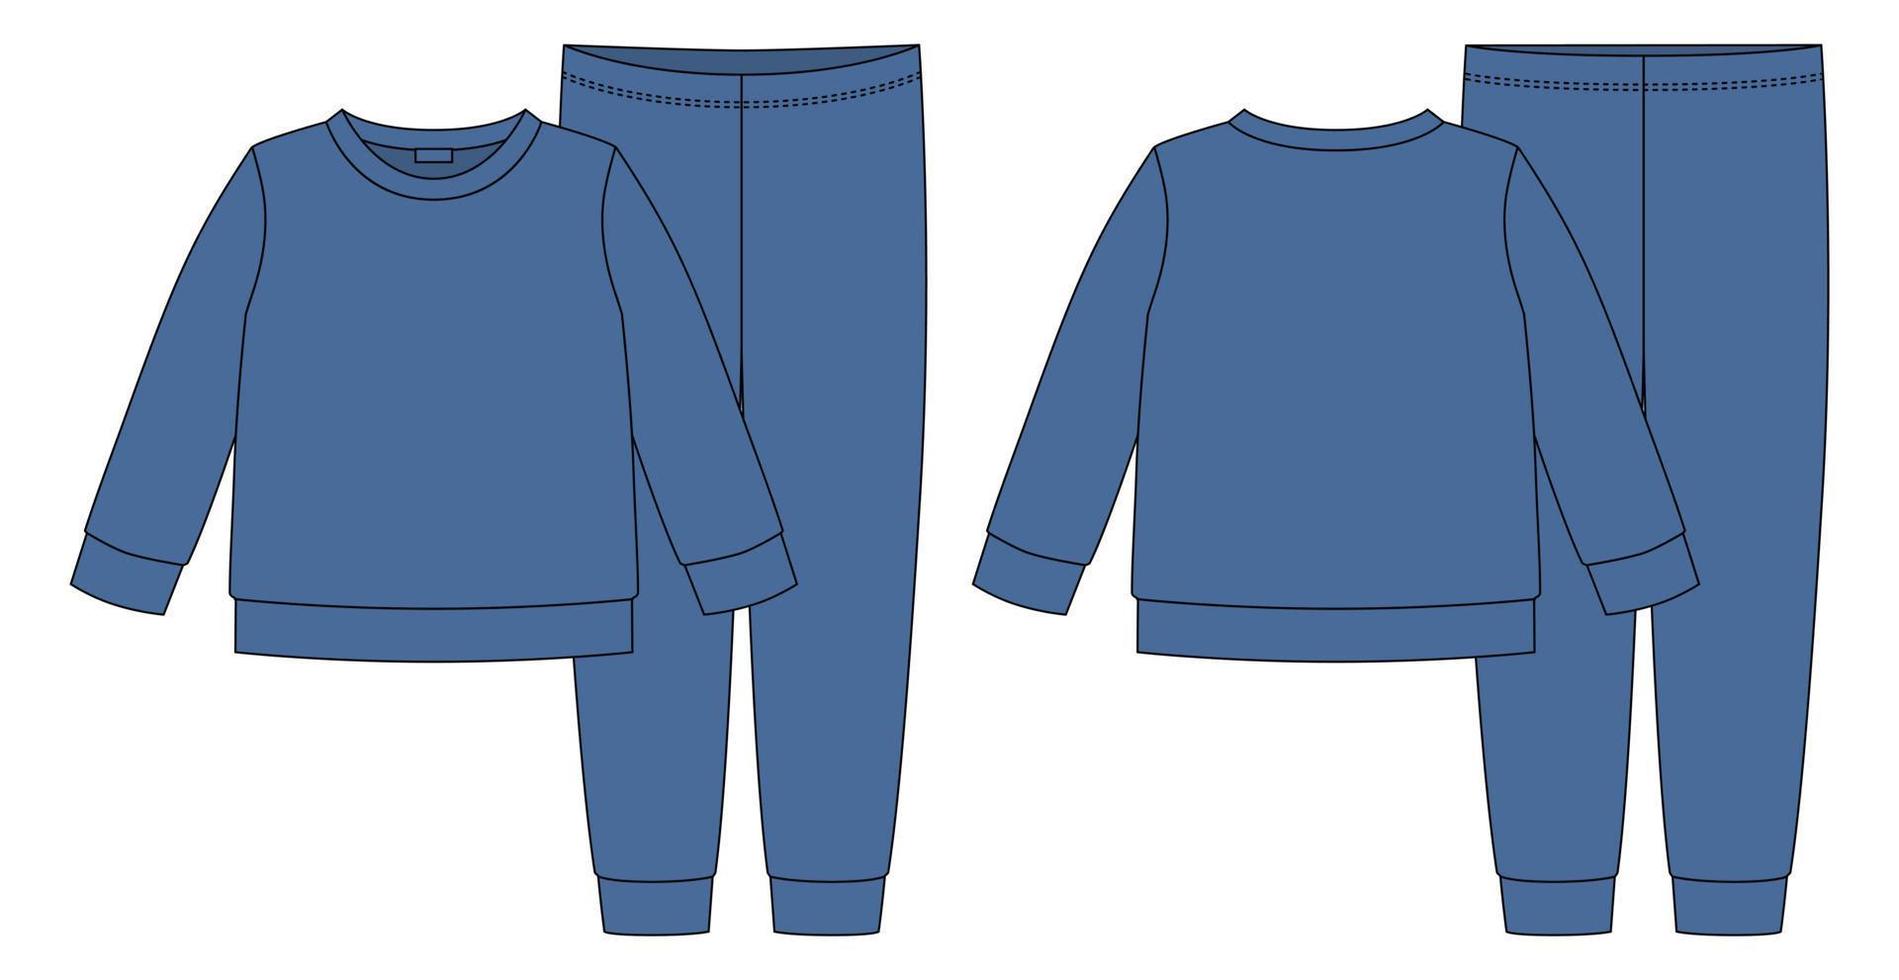 Apparel pajamas technical sketch. Dark blue color. C vector